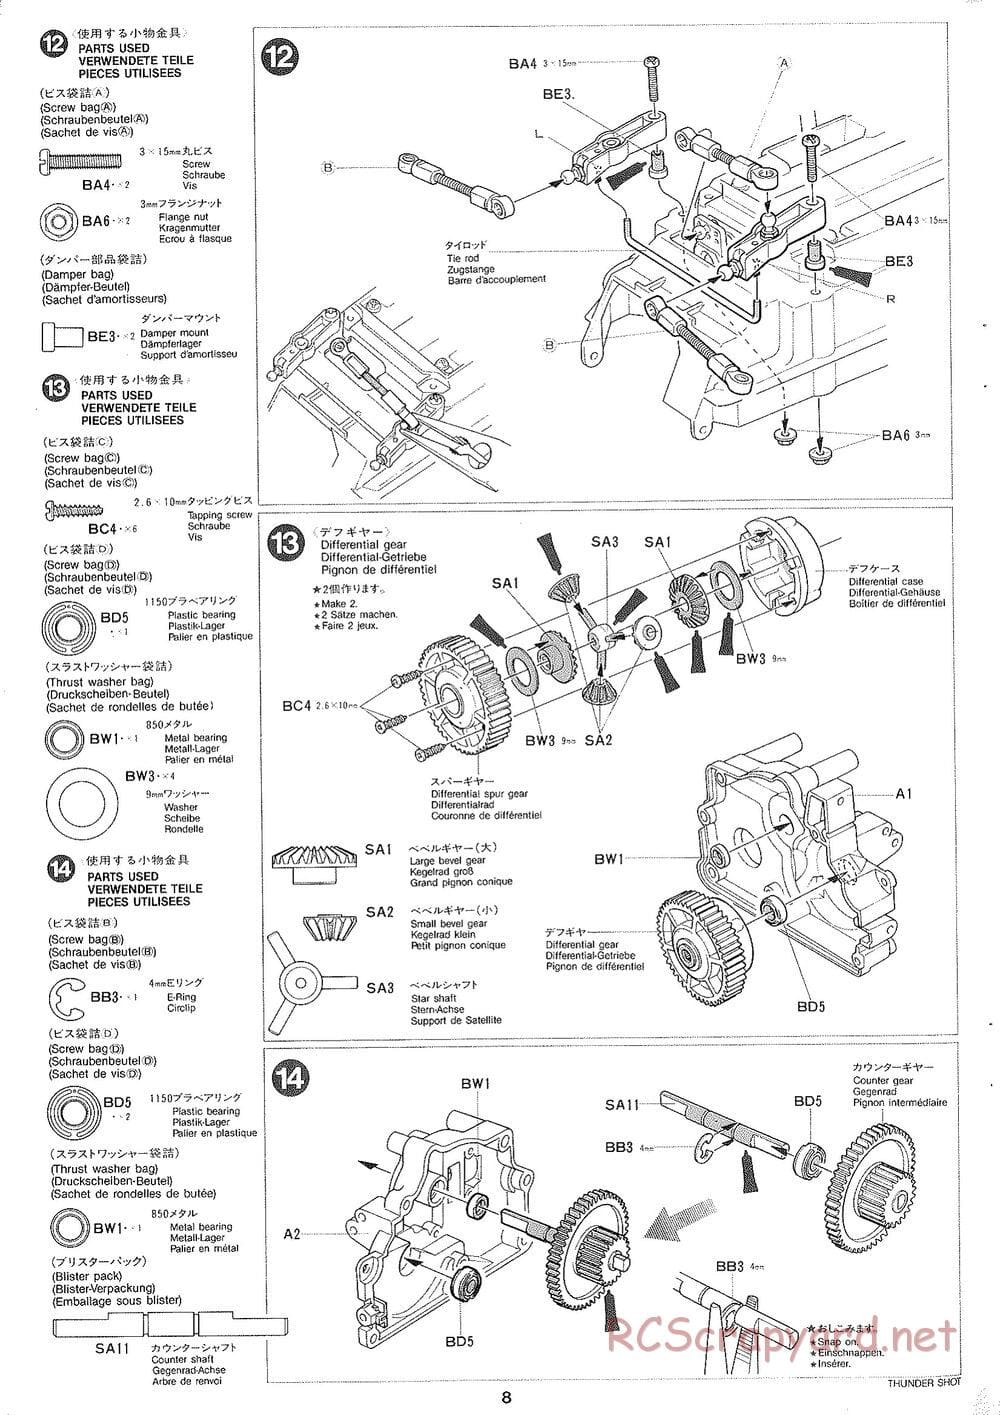 Tamiya - Thunder Shot - TS1 Chassis - Manual - Page 9